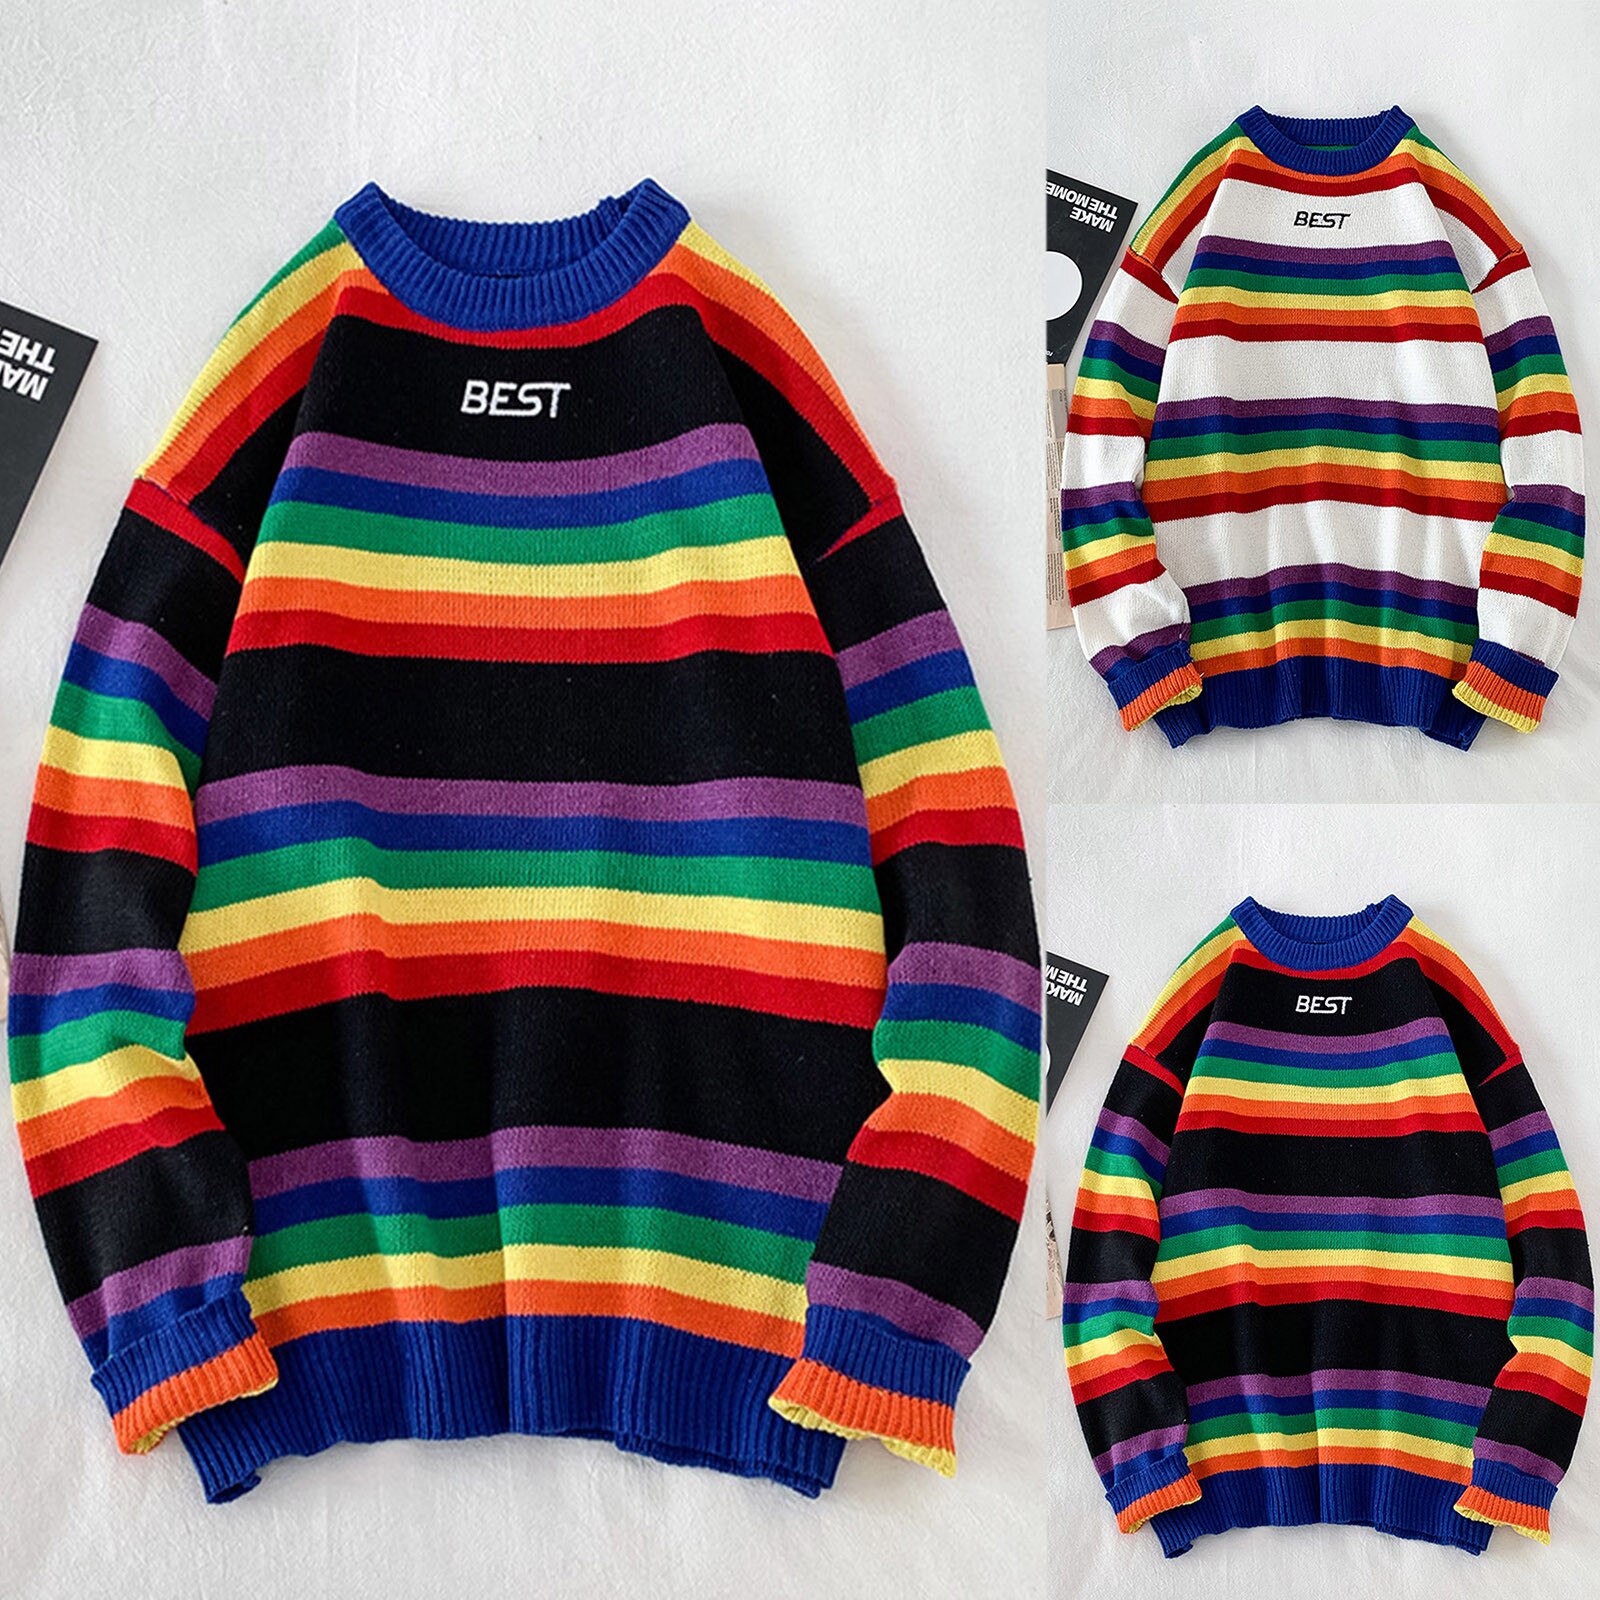 남성 캐주얼 스웨터 패션 레인보우 스트라이프 스플 라이스 스웨터 긴 소매 라운드 넥 스웨터 블라우스